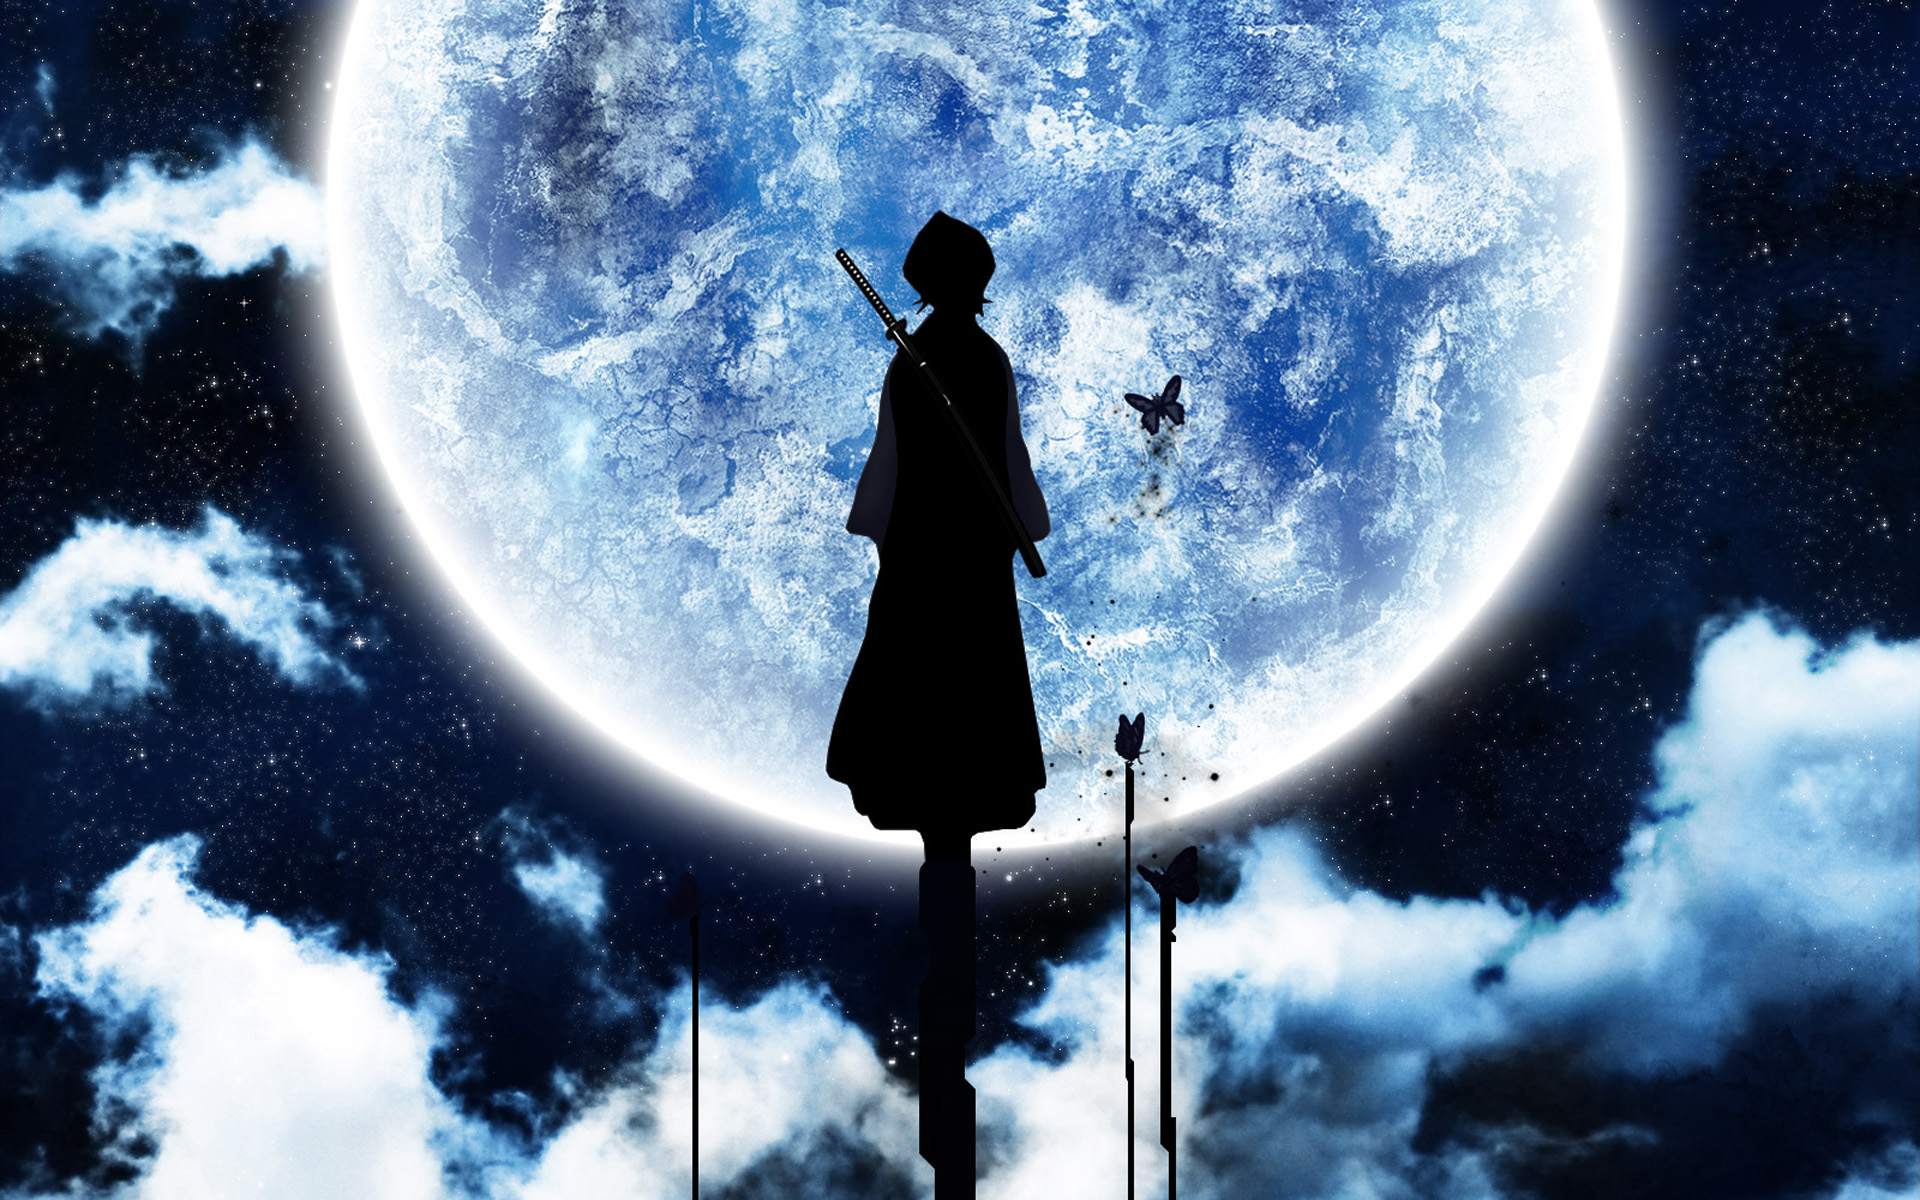 Rukia Kuchiki under the moonlight.